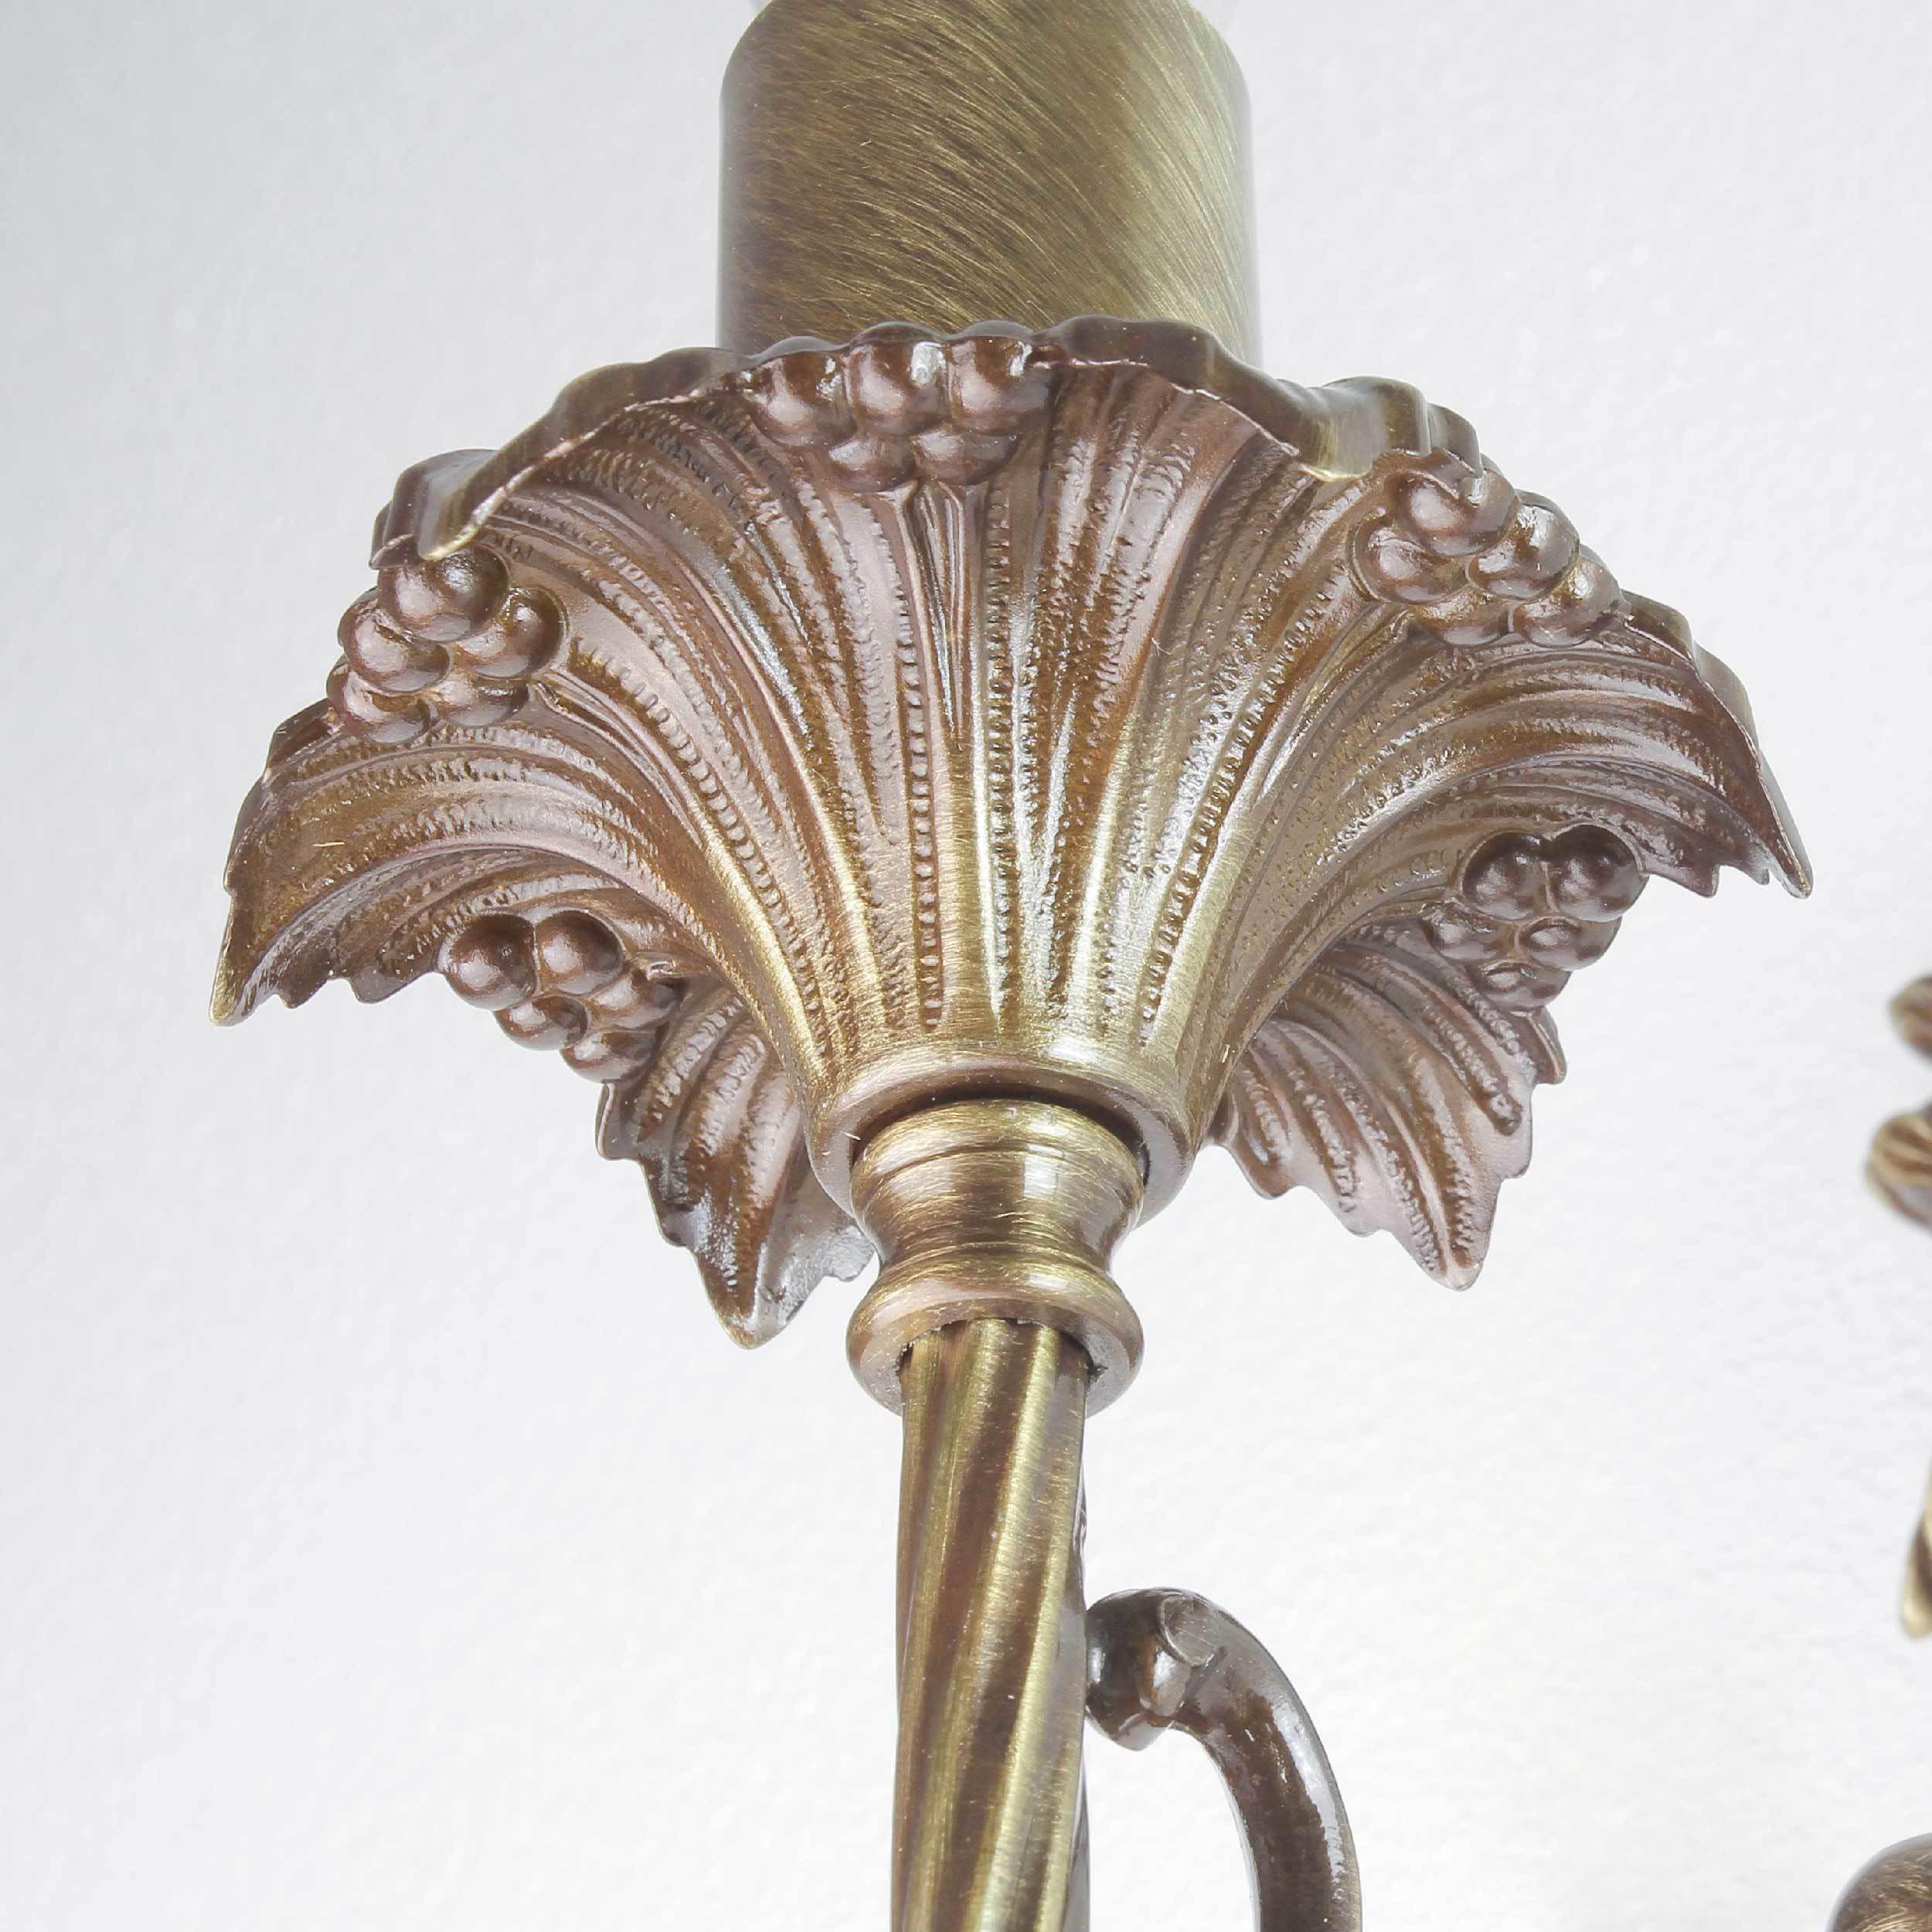 Premium Wandlampe Echt-Messing in Bronze Klassisch